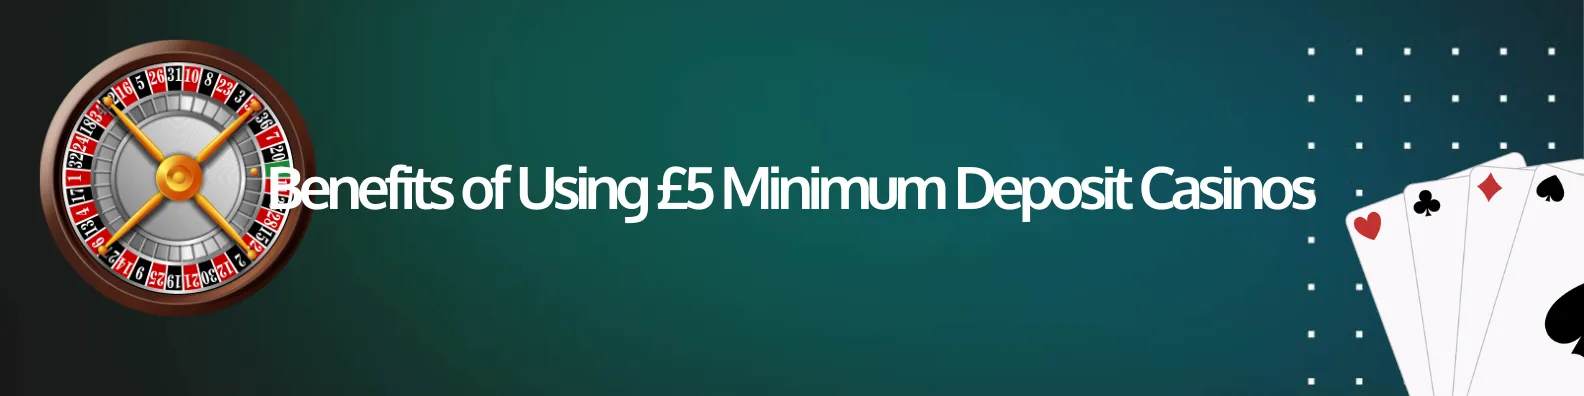 Benefits of Using £5 Minimum Deposit Casinos